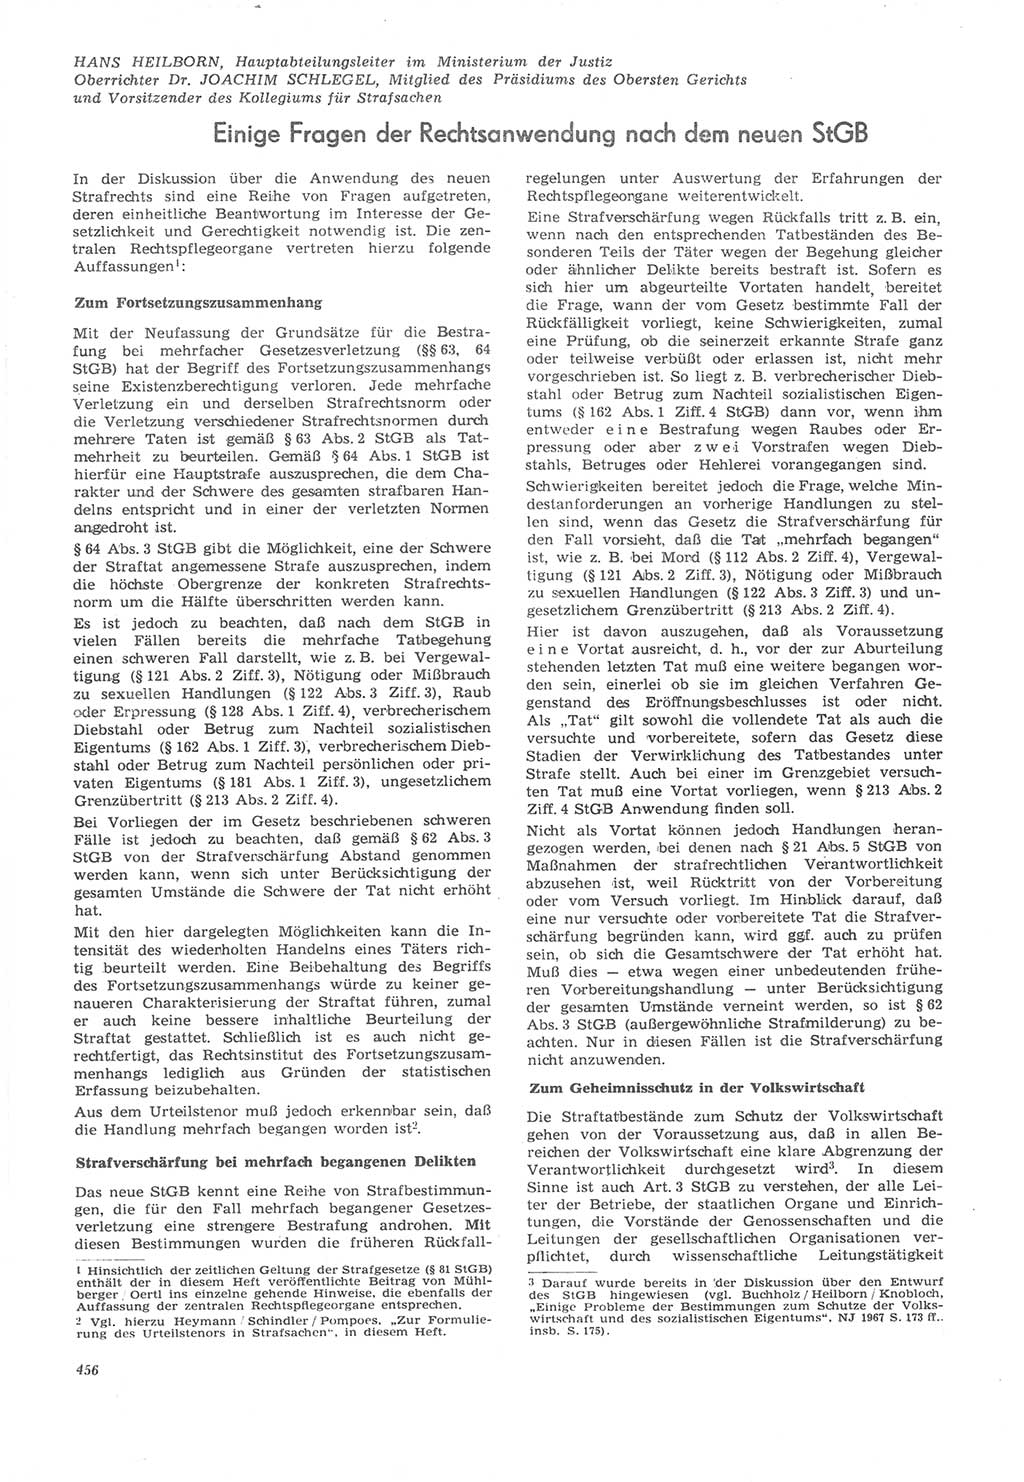 Neue Justiz (NJ), Zeitschrift für Recht und Rechtswissenschaft [Deutsche Demokratische Republik (DDR)], 22. Jahrgang 1968, Seite 456 (NJ DDR 1968, S. 456)